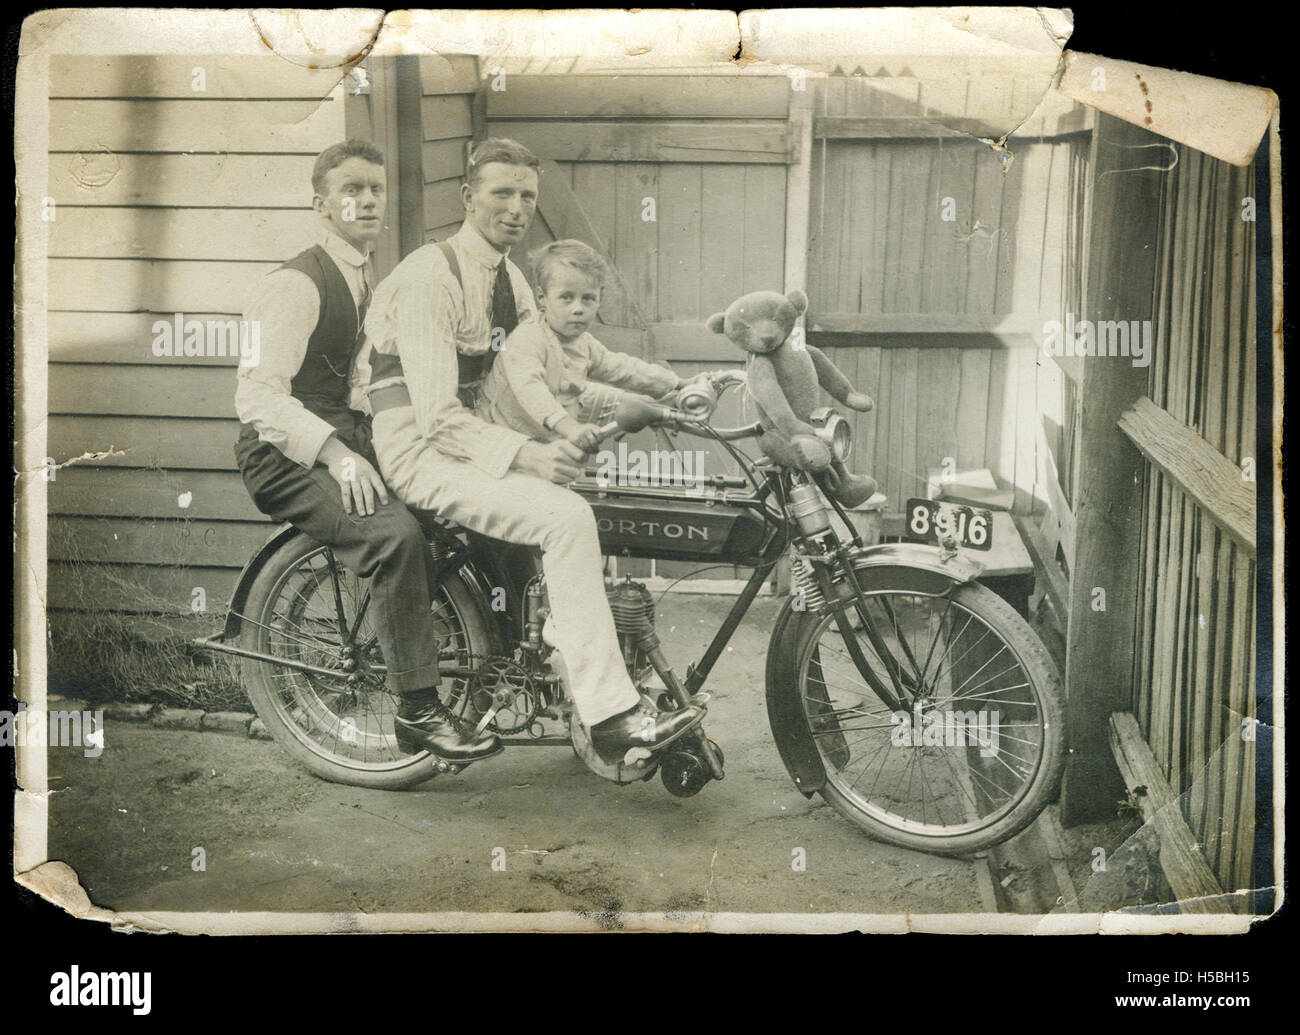 5 Deux hommes et un jeune garçon (Tom) sur une moto, avec un ours assis sur le guidon Banque D'Images